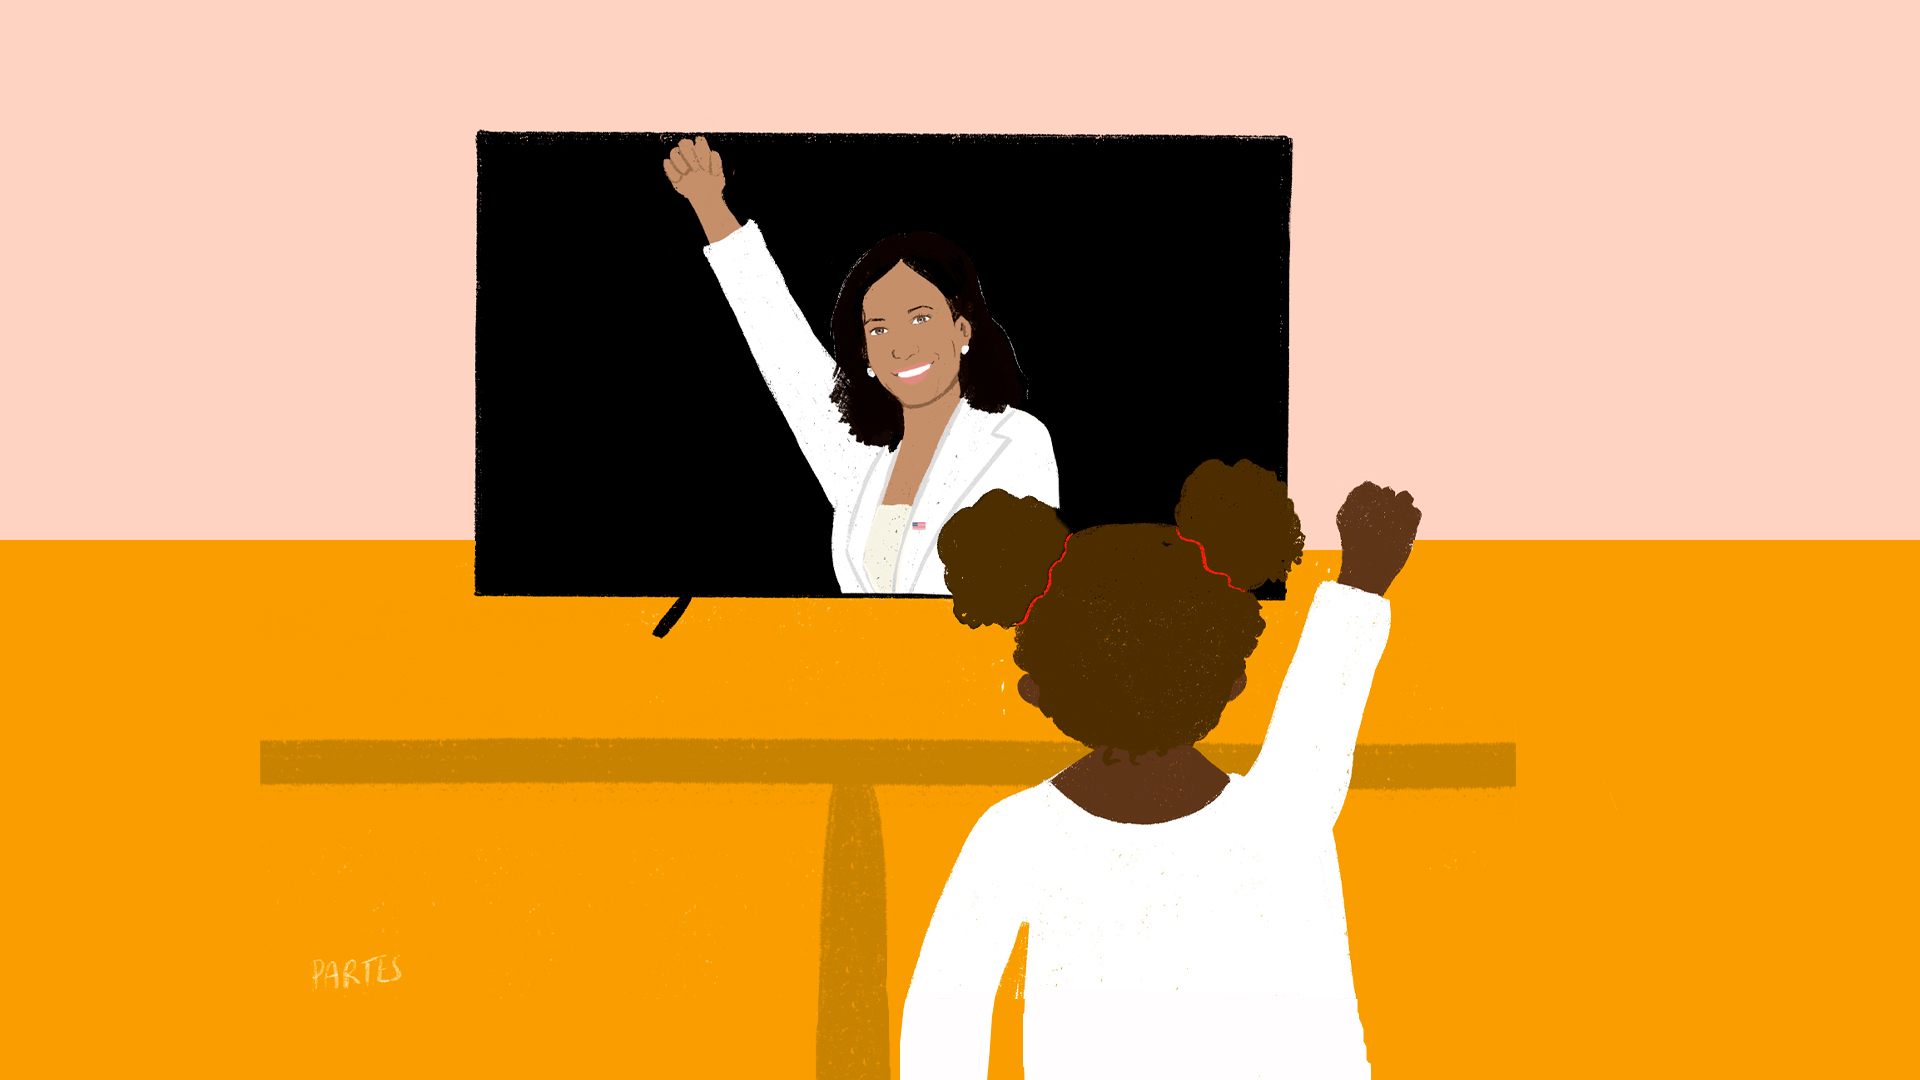 Ilustração de Kamala Harris que aparece na tela de uma televisão enquanto uma menina negra imita seu gesto de punho cerrado